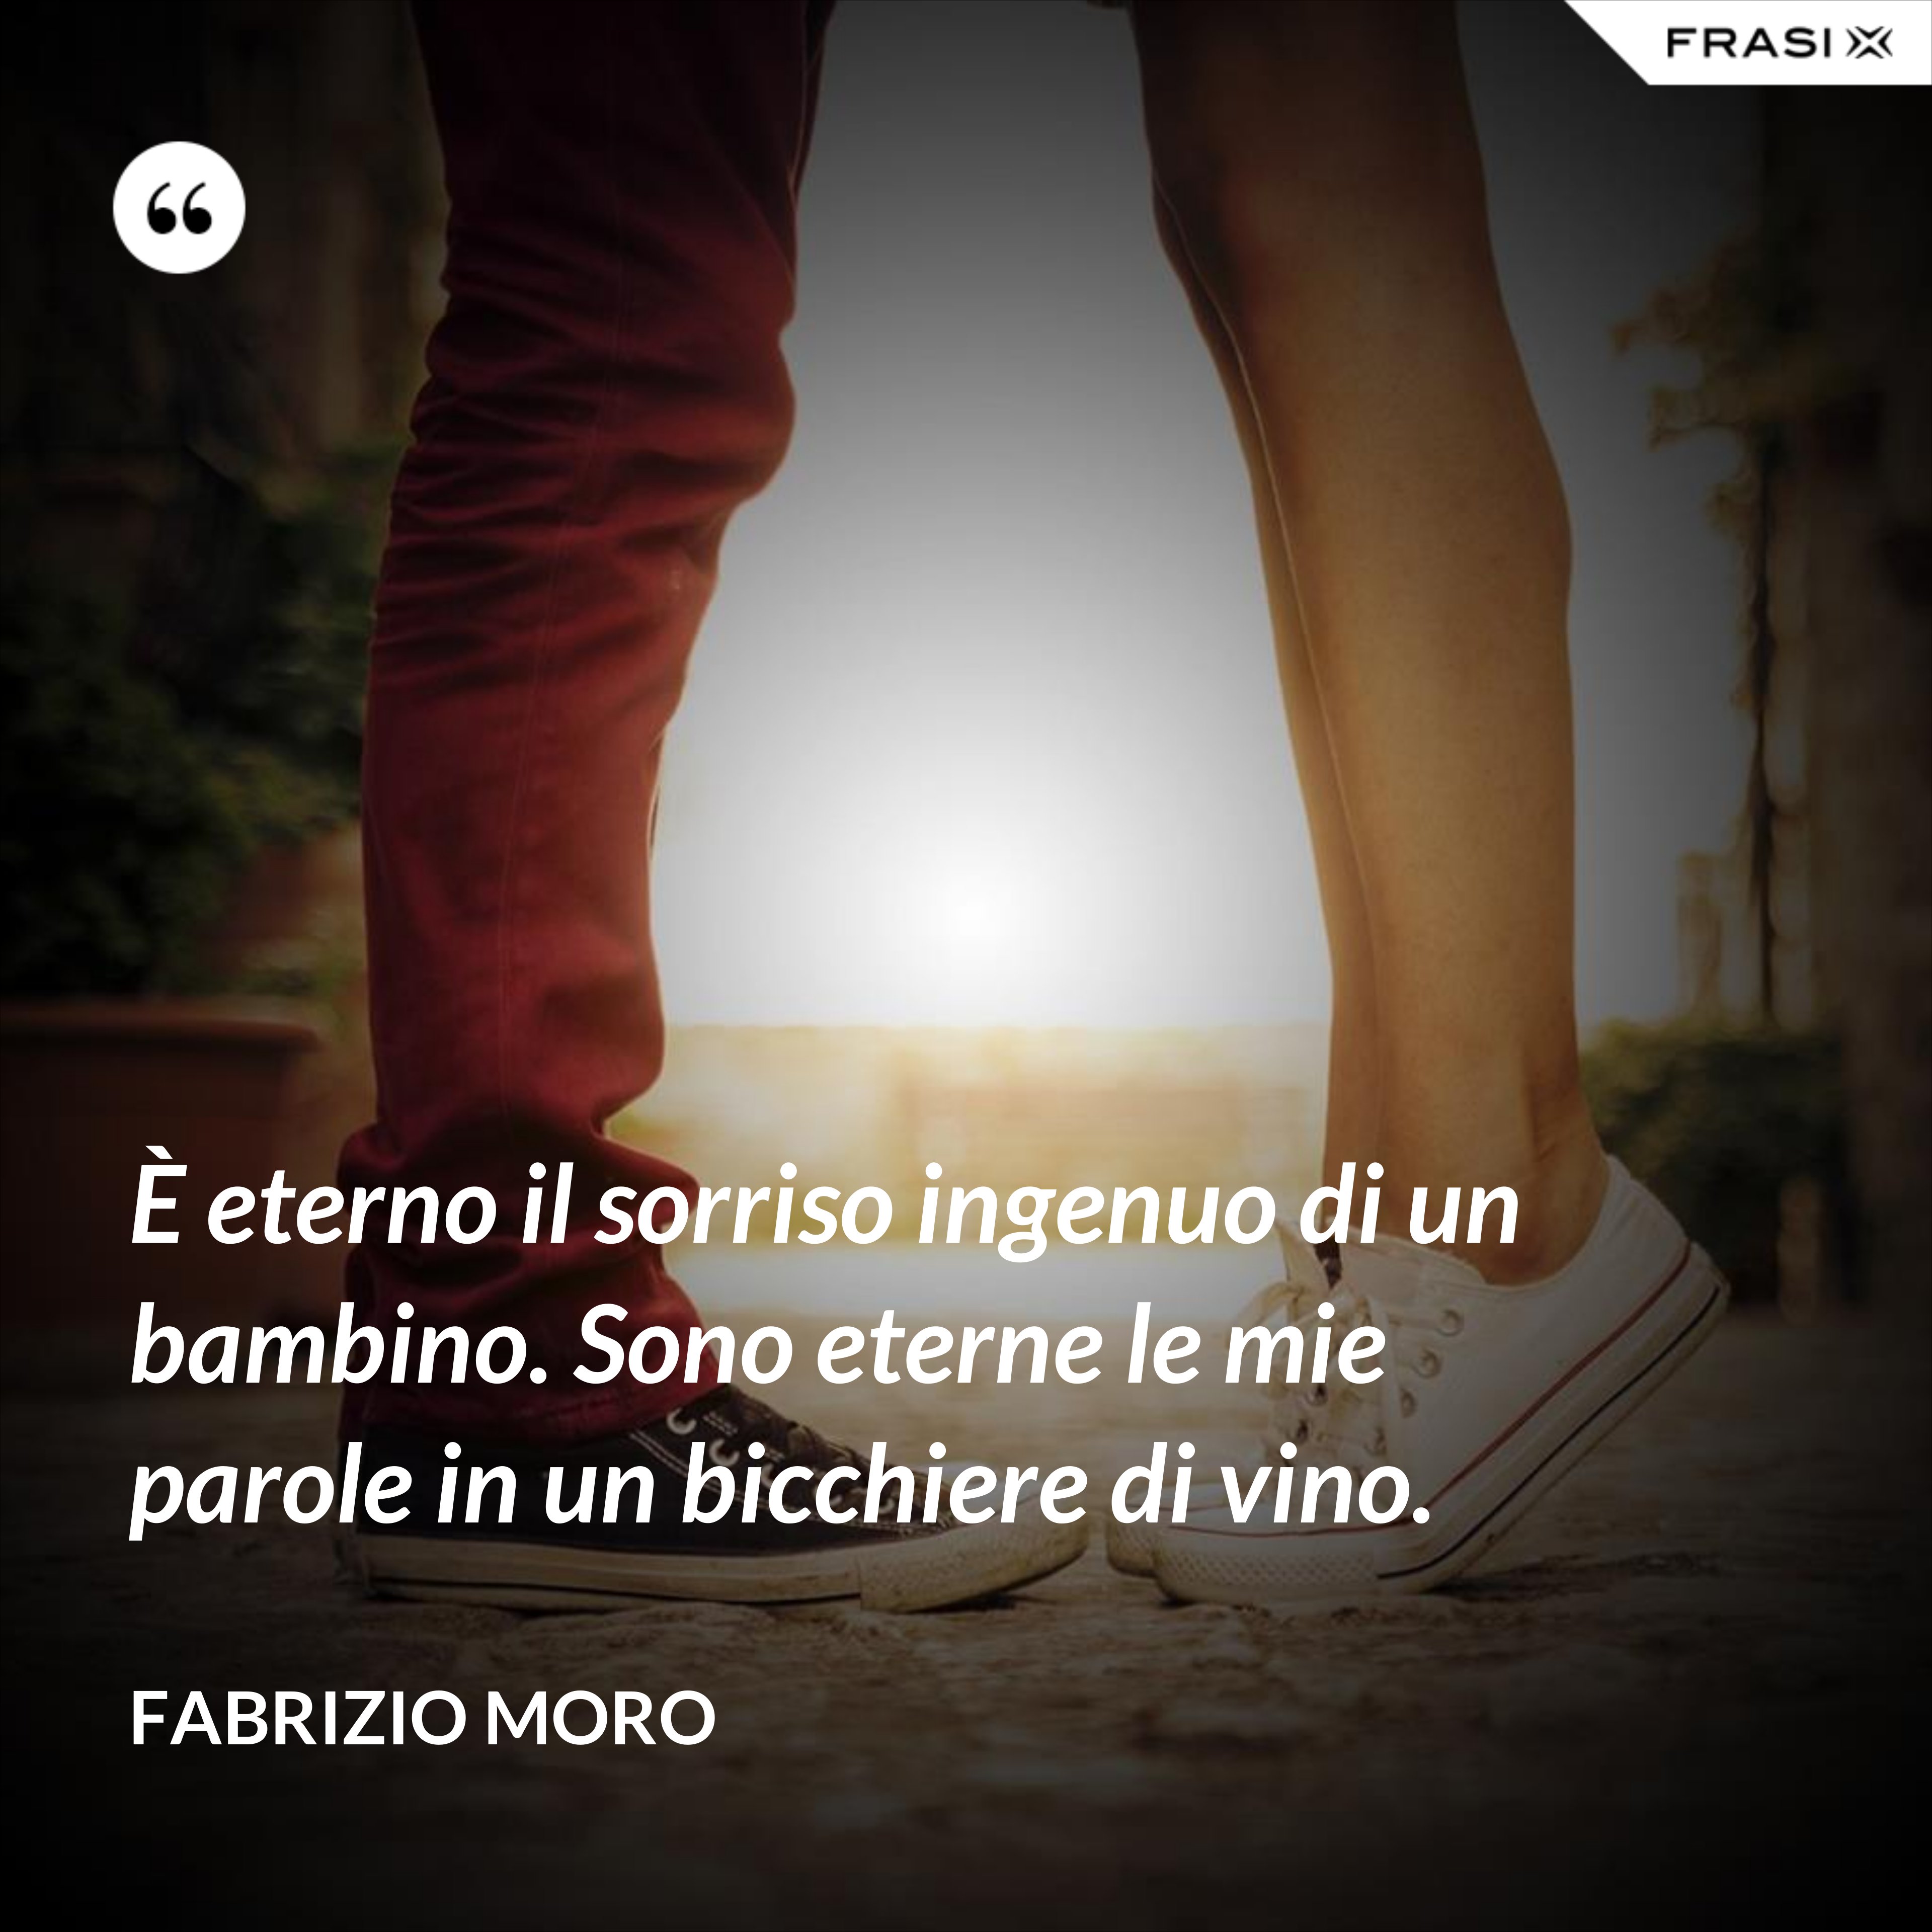 È eterno il sorriso ingenuo di un bambino. Sono eterne le mie parole in un bicchiere di vino. - Fabrizio Moro